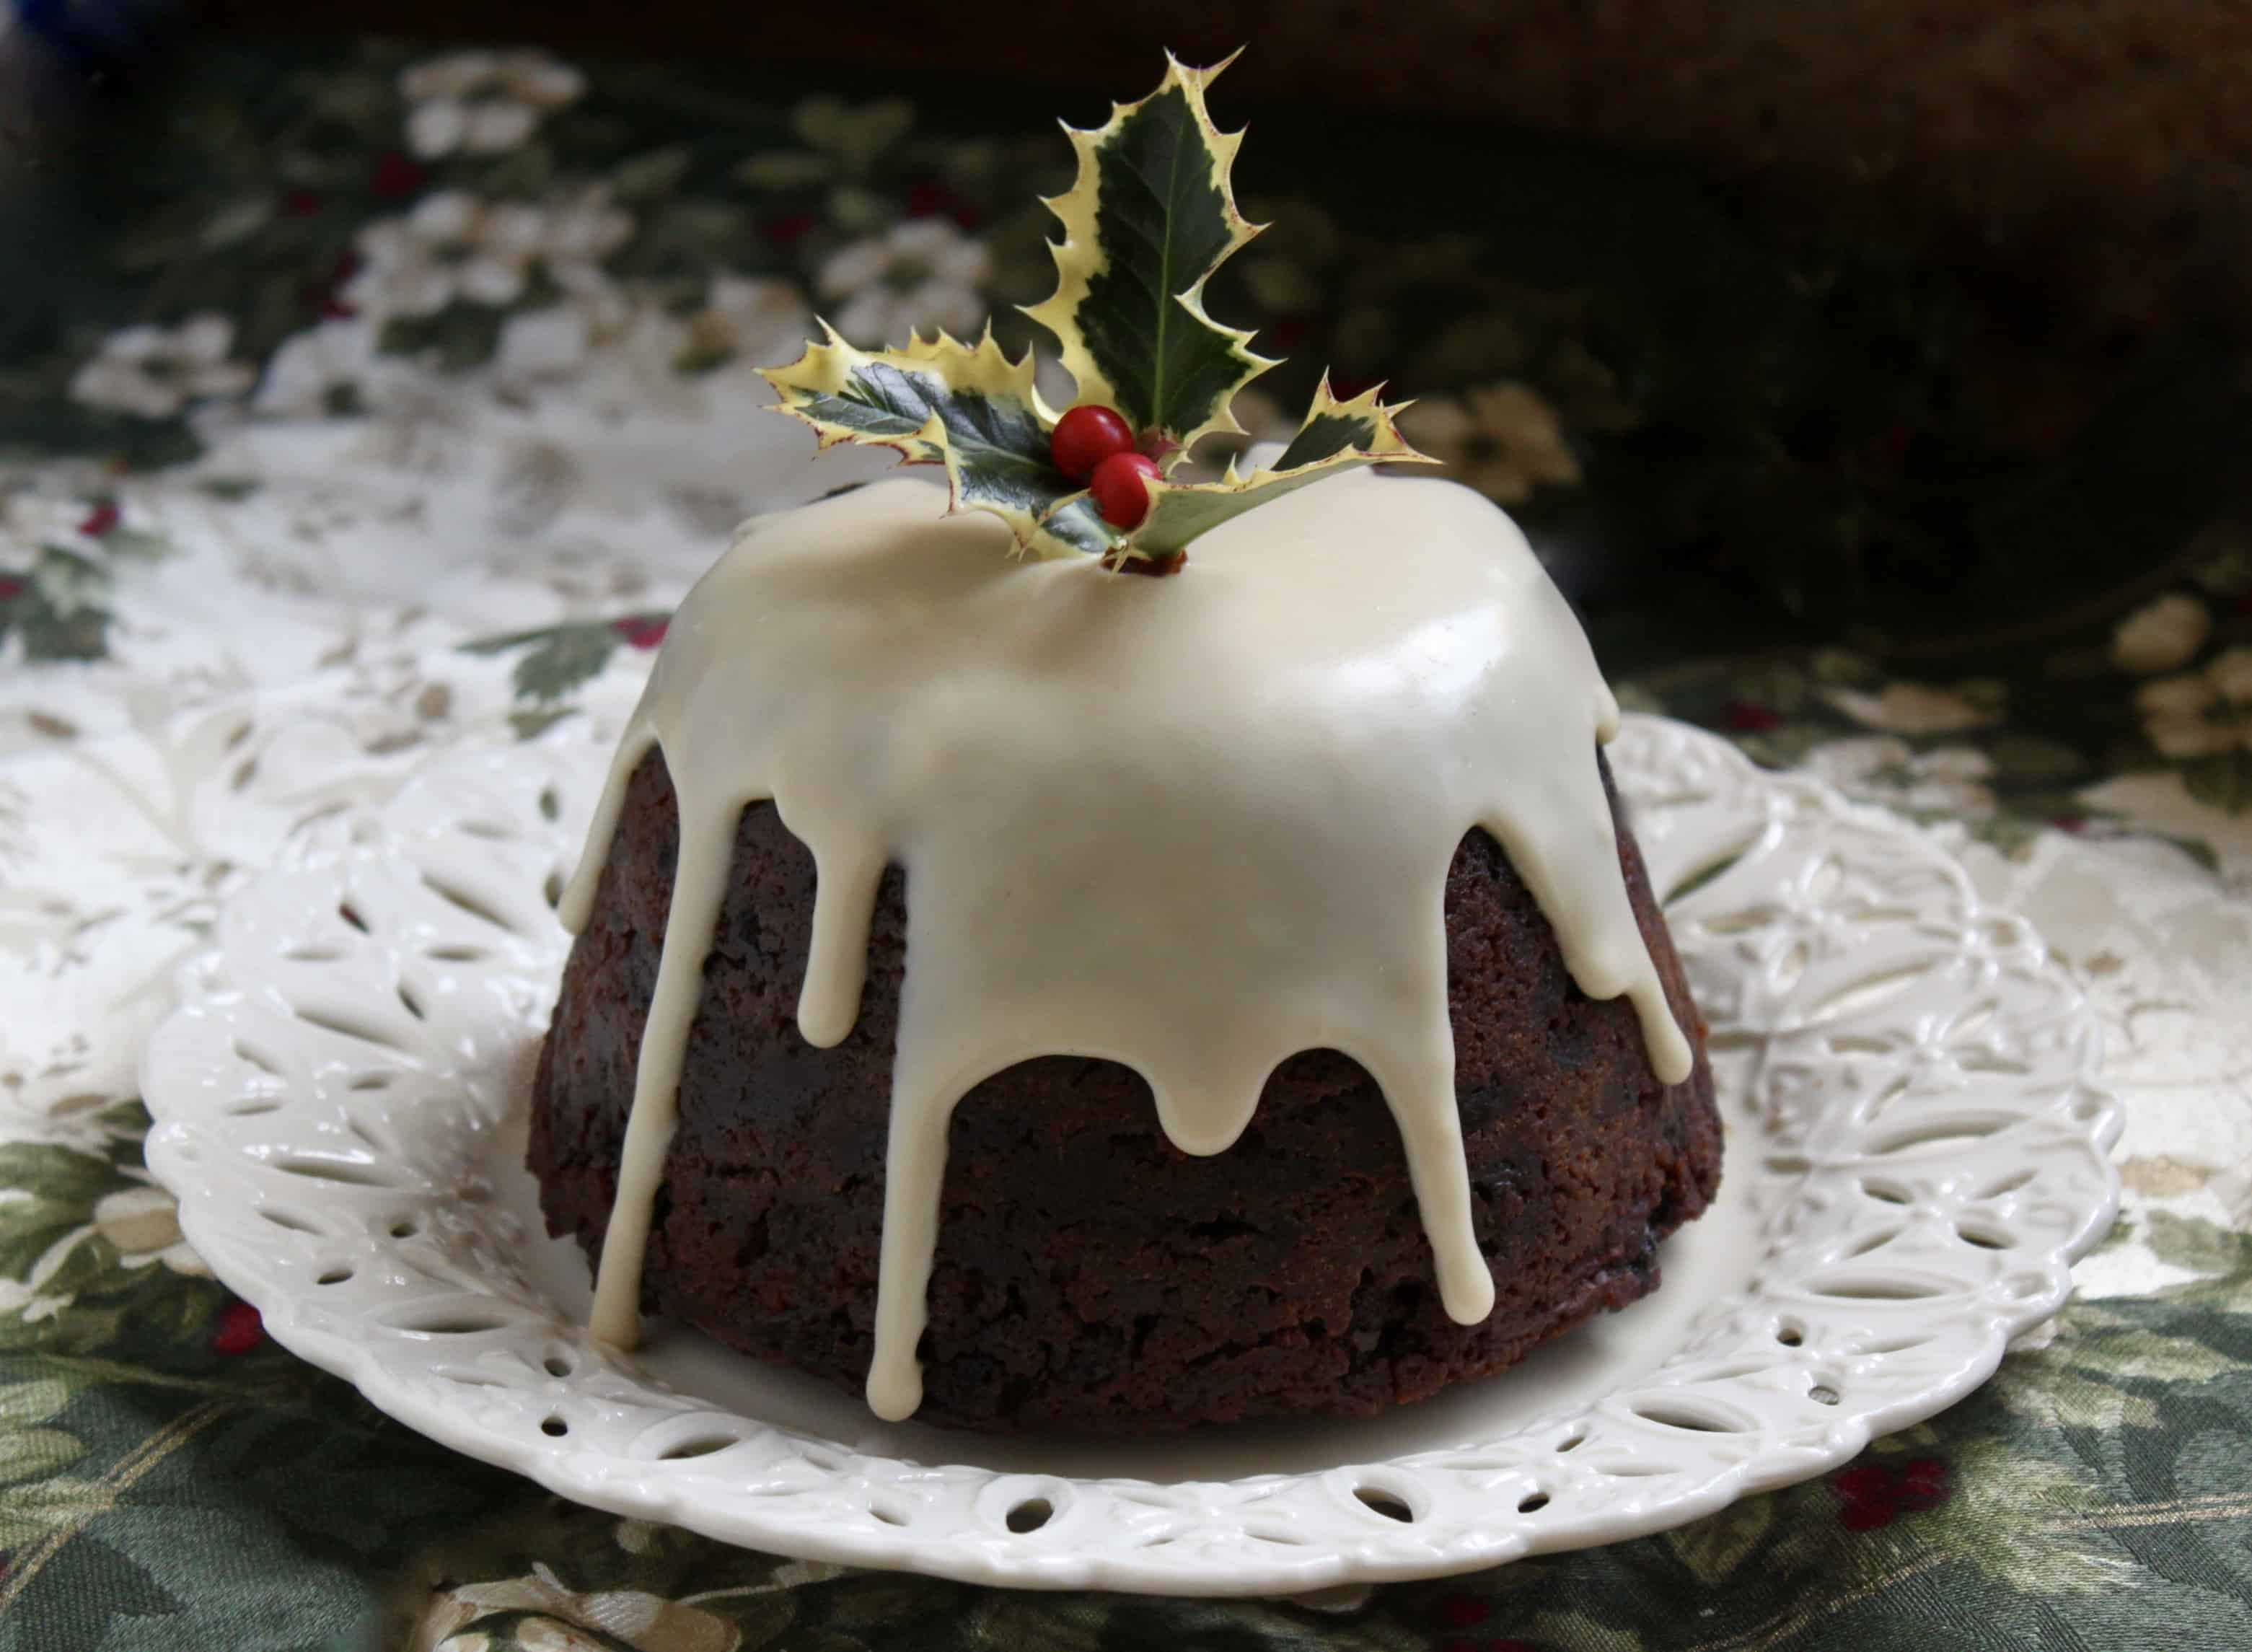 Traditional English Christmas Desserts
 Traditional British Christmas Pudding a Make Ahead Fruit